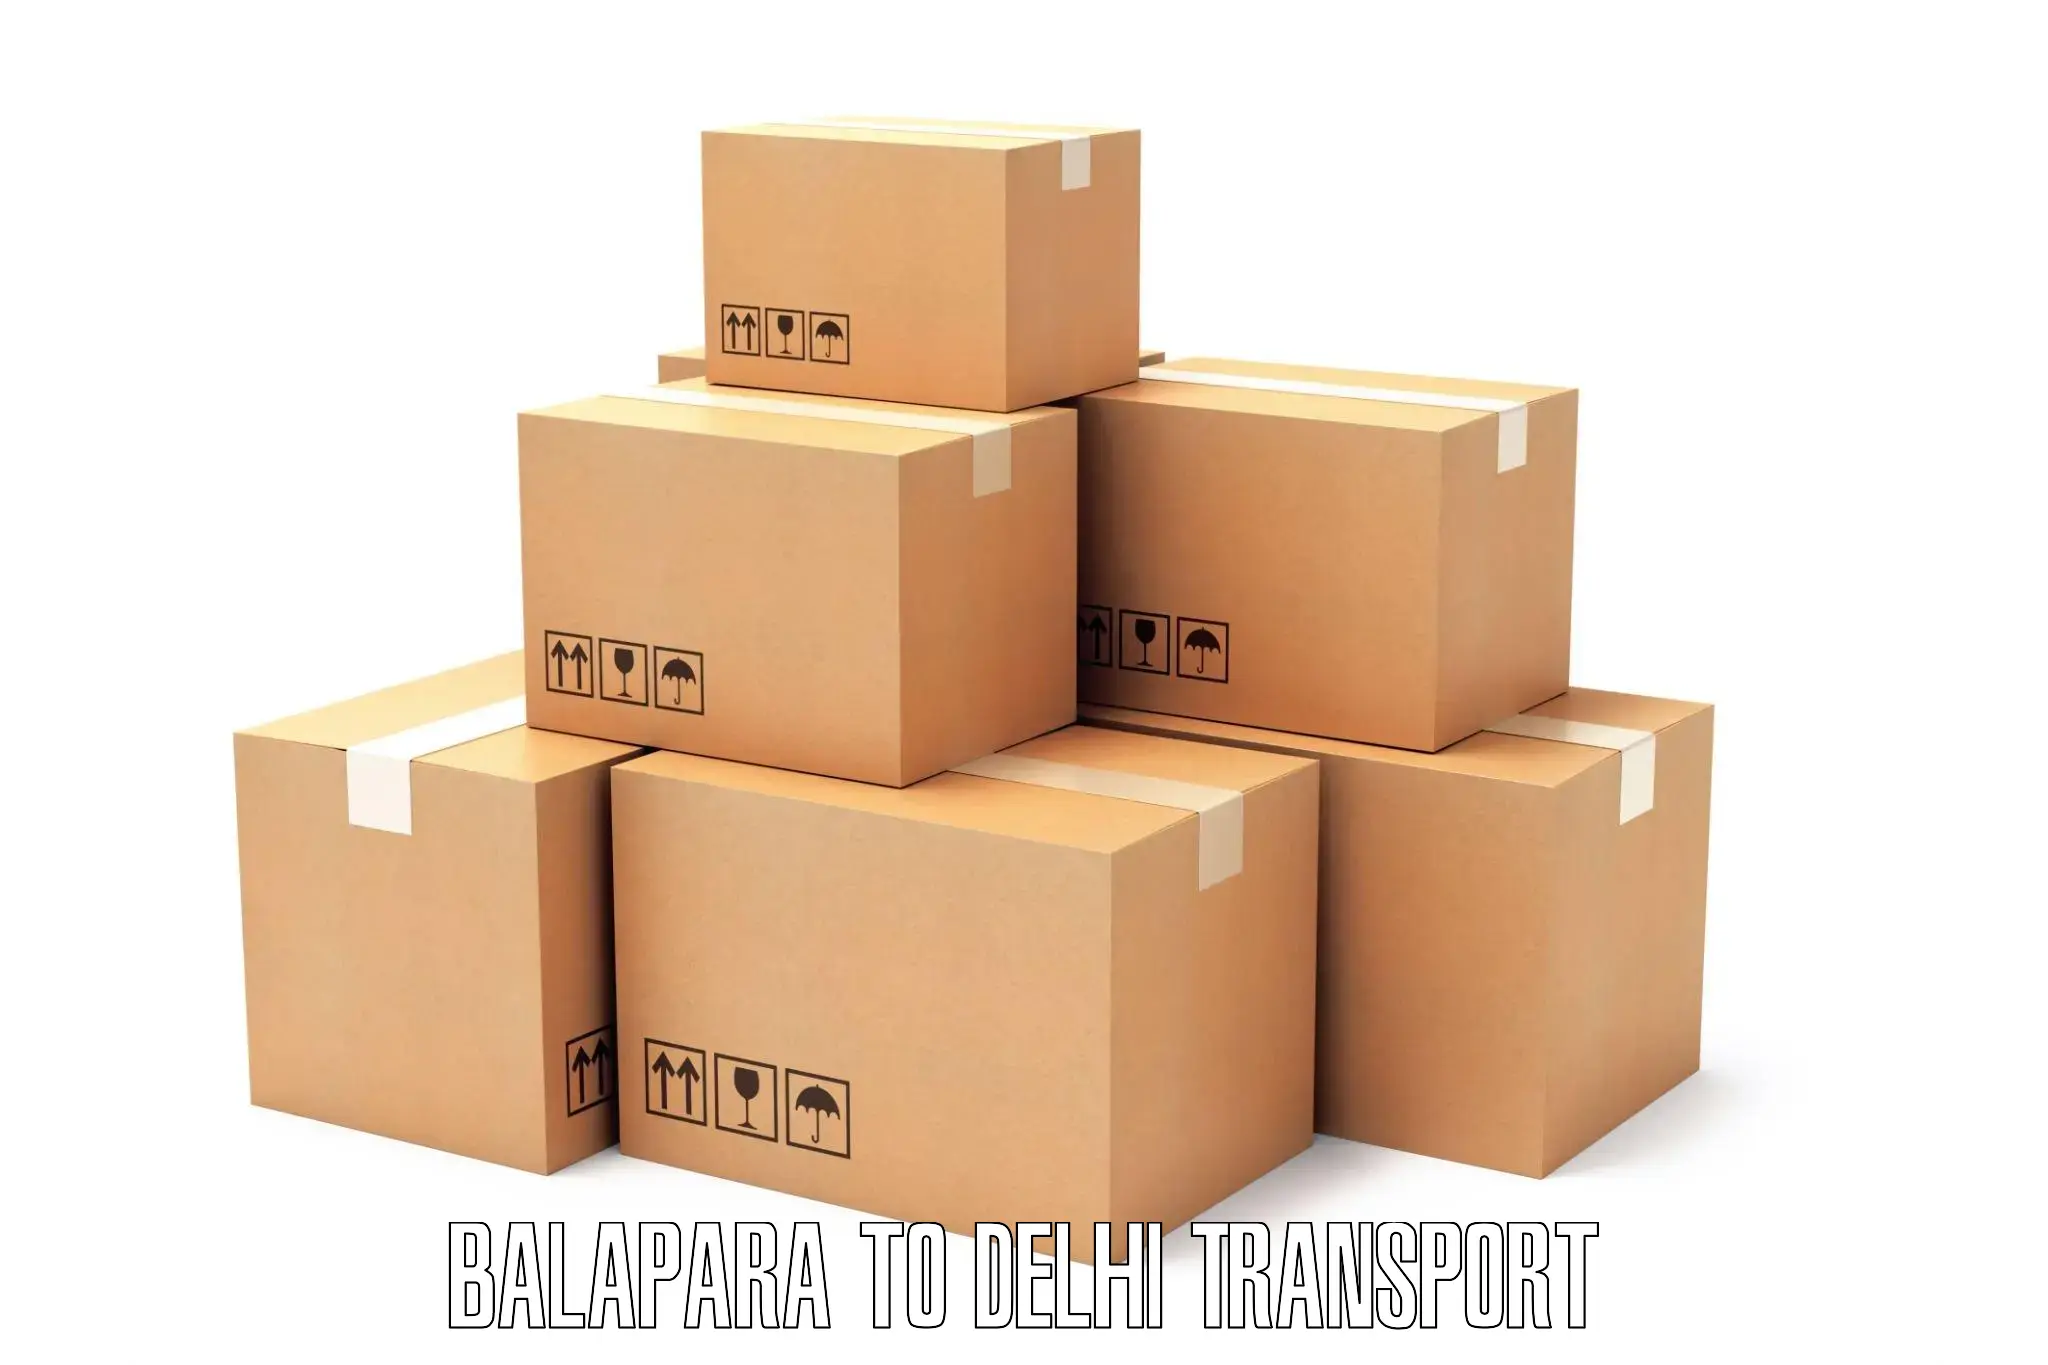 Shipping services Balapara to NCR